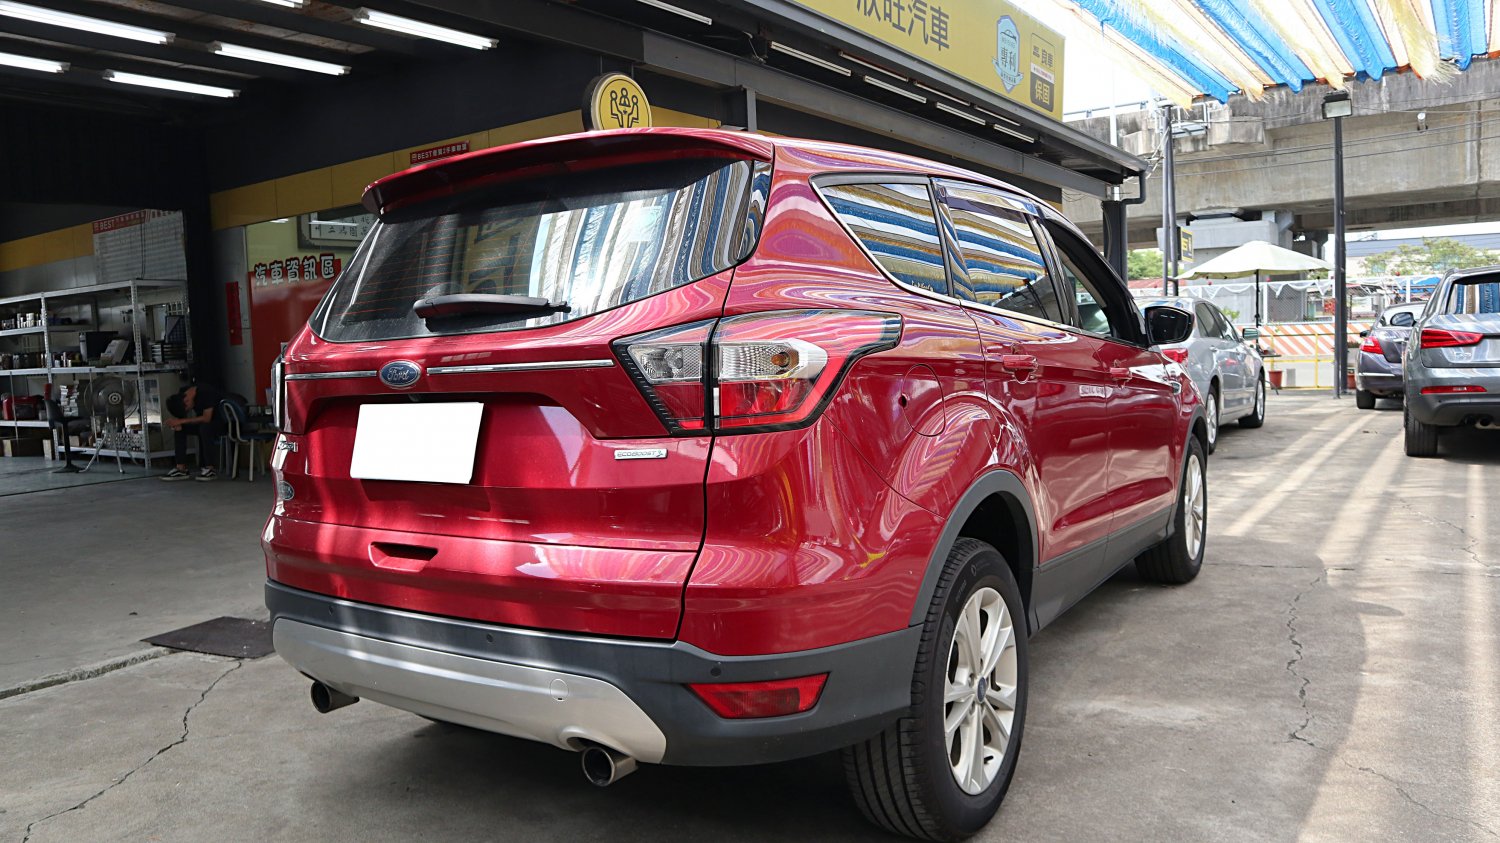 Ford 福特 ／ Kuga ／ 2018年 ／ 2018年 Ford Kuga 紅色 福特中古車 ／ MG車庫(台南)